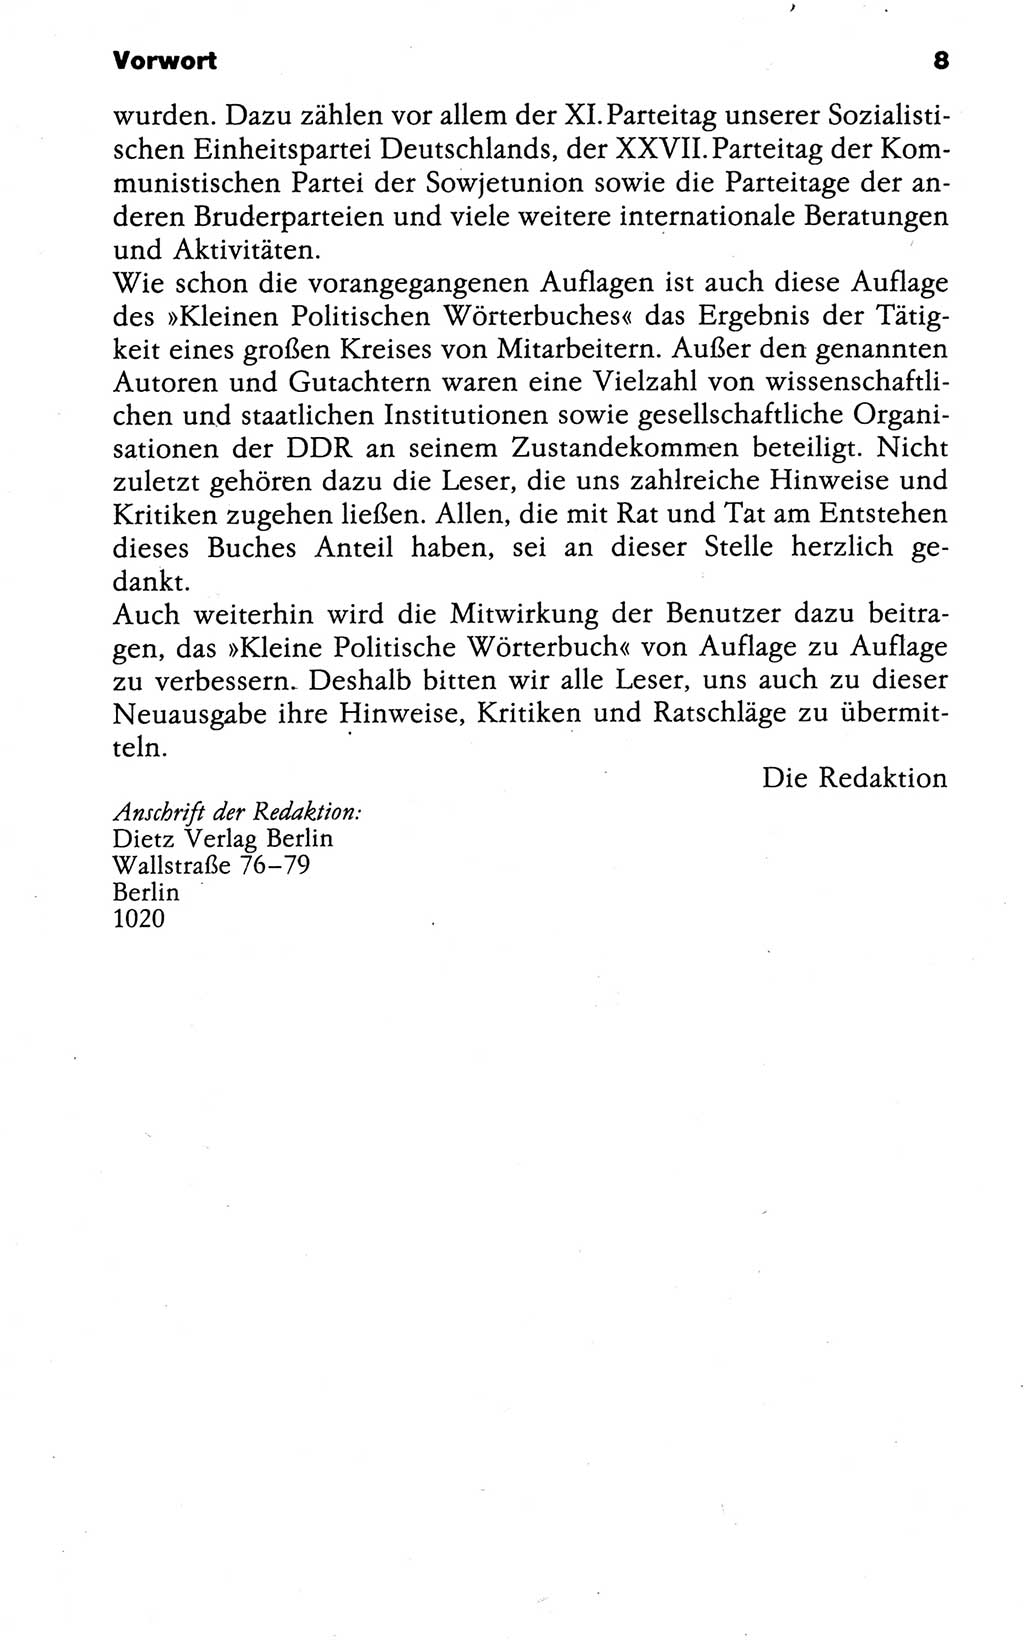 Kleines politisches Wörterbuch [Deutsche Demokratische Republik (DDR)] 1988, Seite 8 (Kl. pol. Wb. DDR 1988, S. 8)